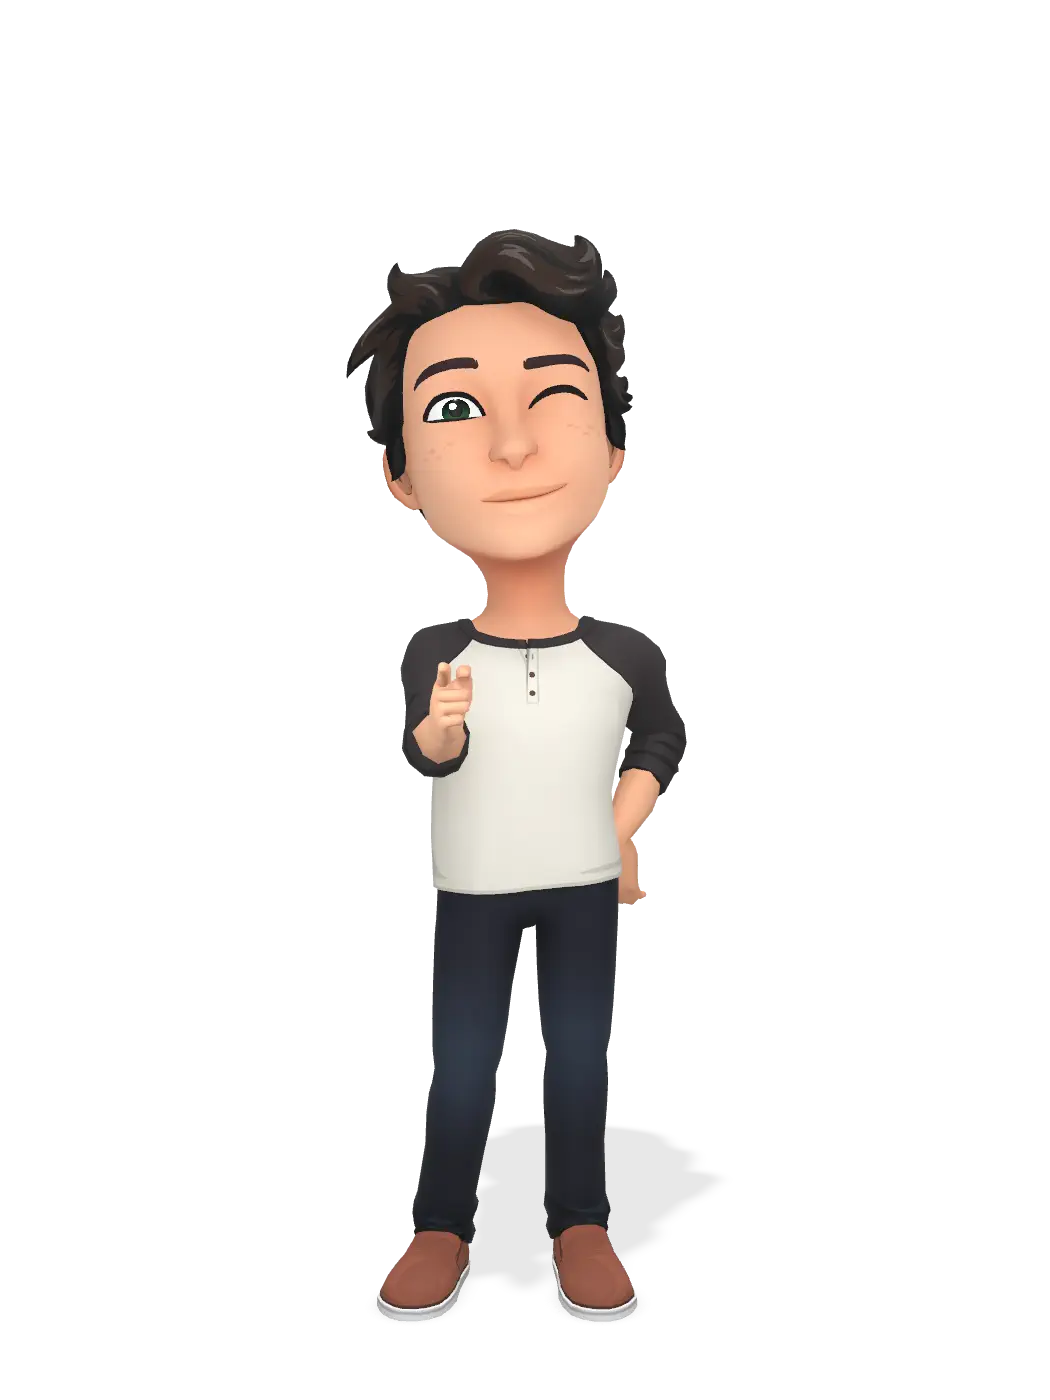 3D Bitmoji for nathantesman avatar